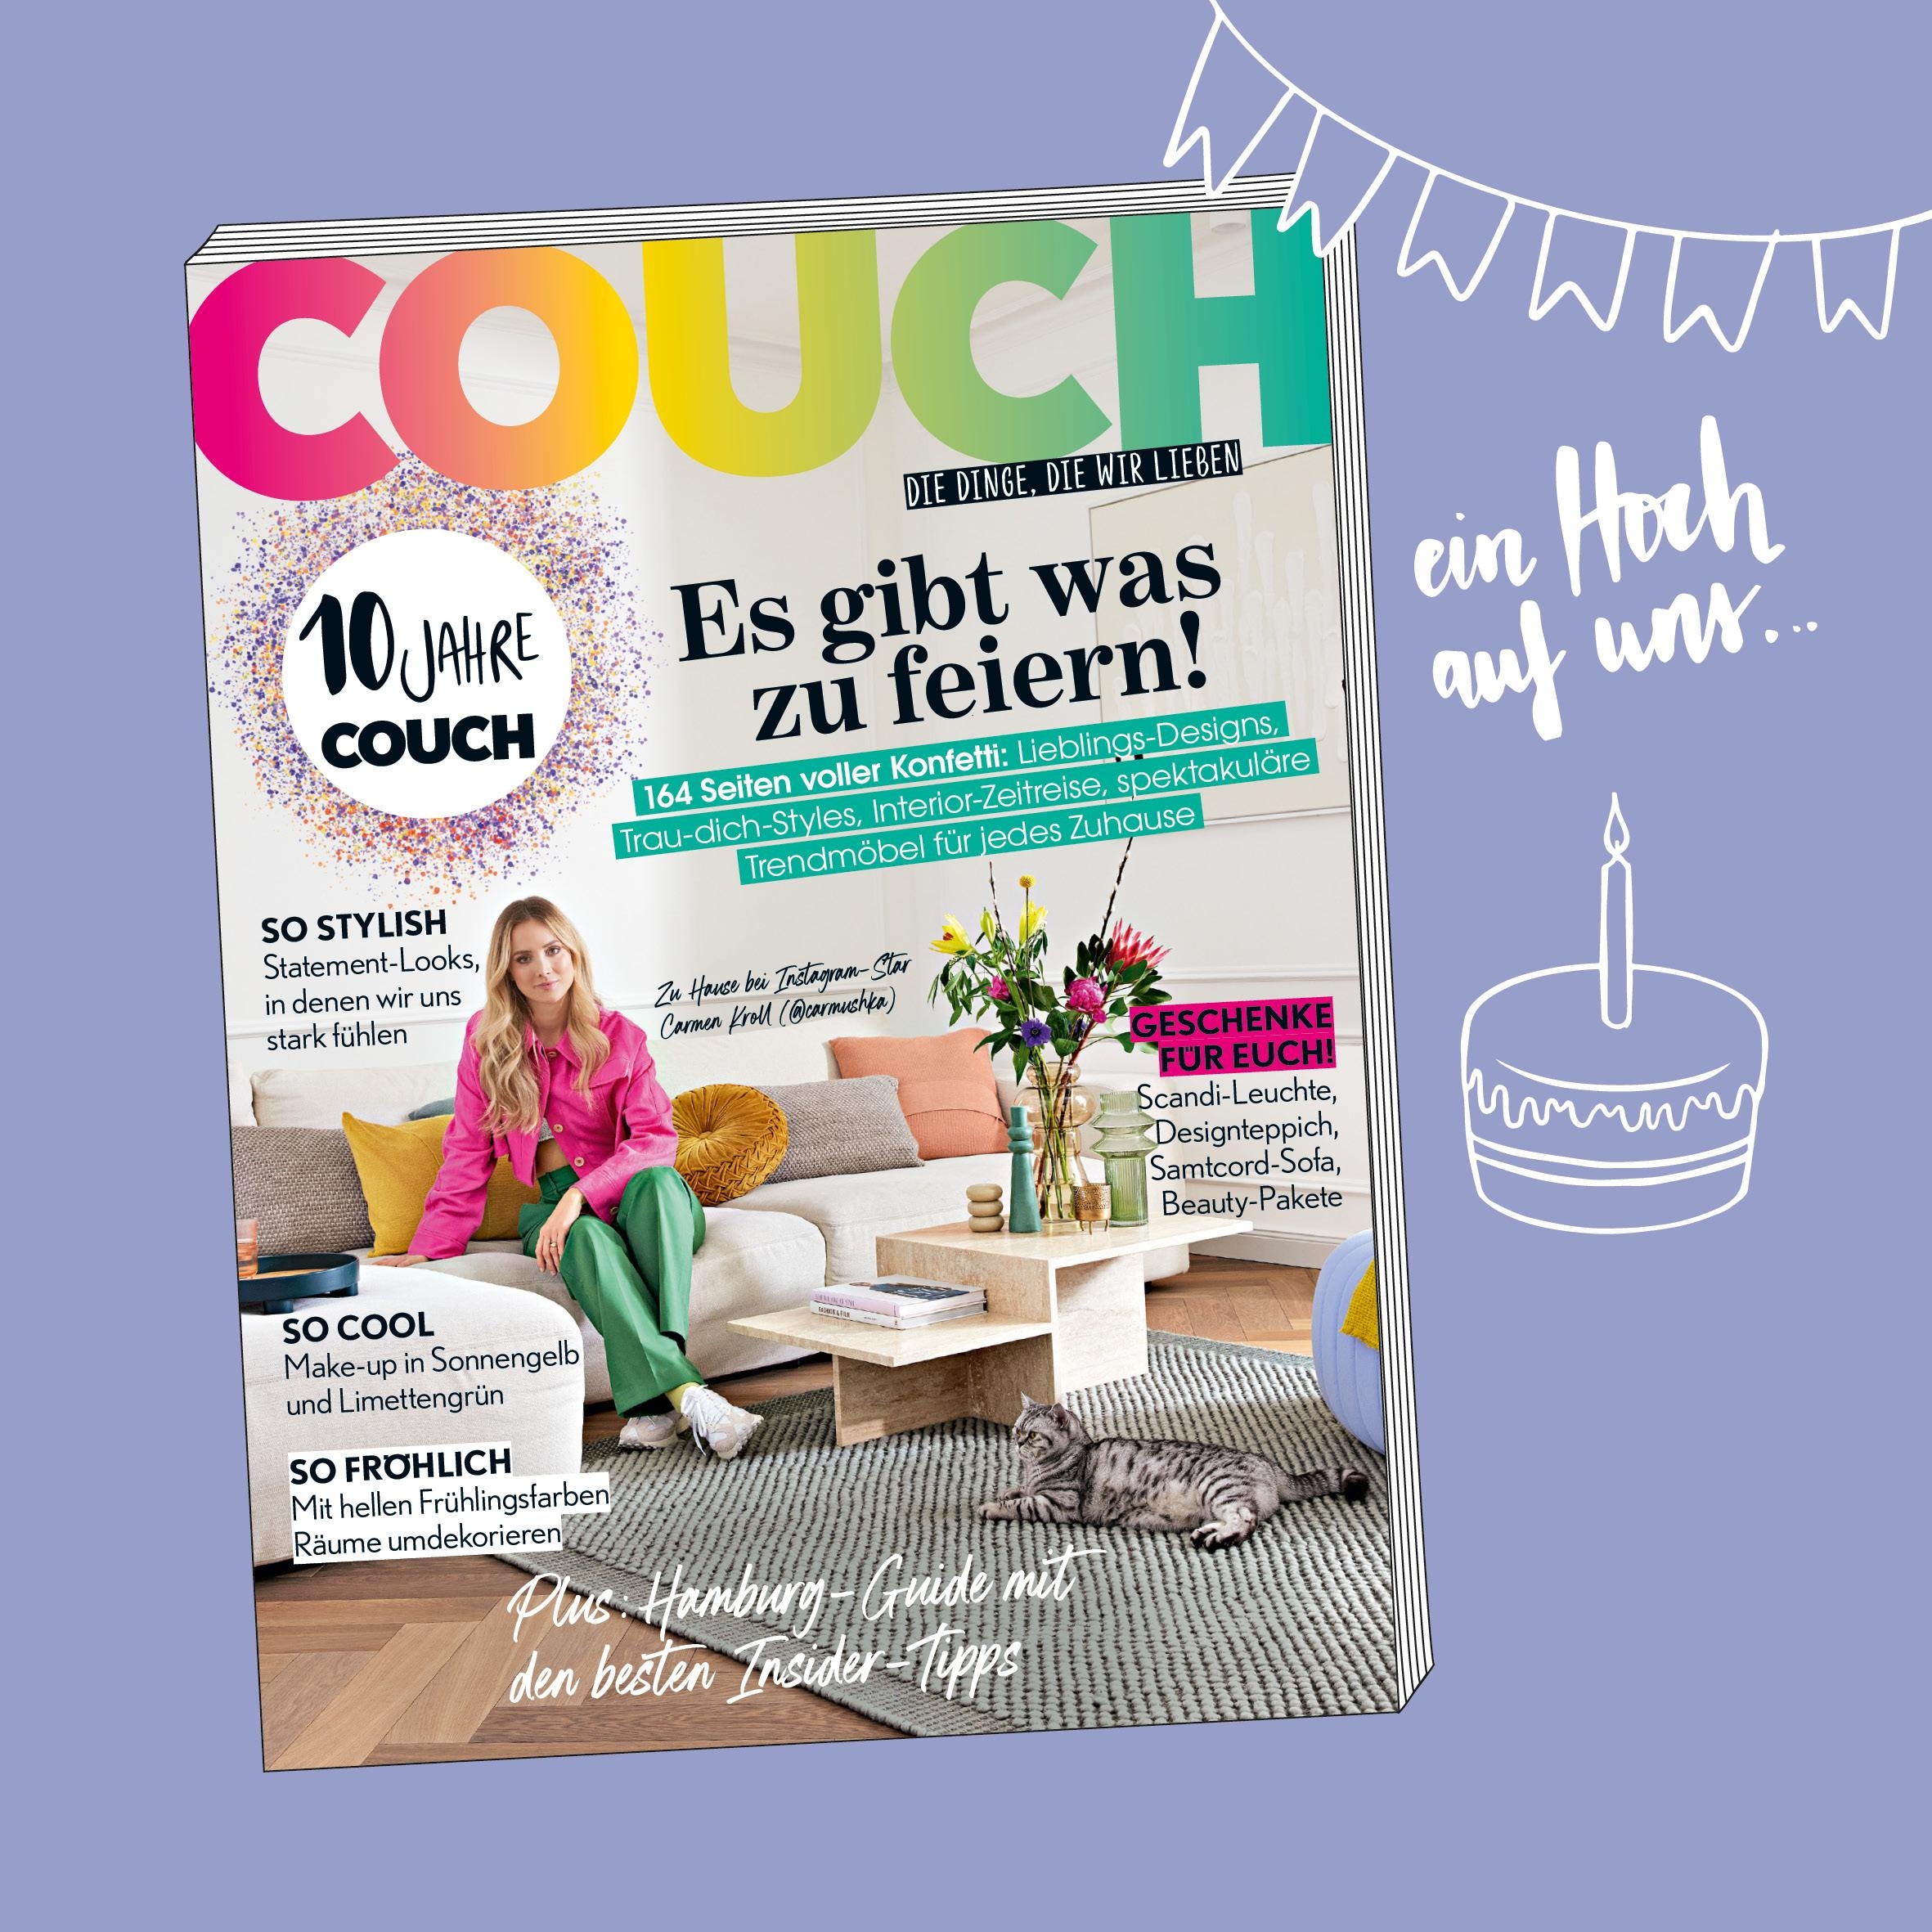 Nicht verpassen: Wir feiern unseren 10. Geburtstag! Holt Euch schnell unsere neue Ausgabe. :)
#couchmagazin #couchabo